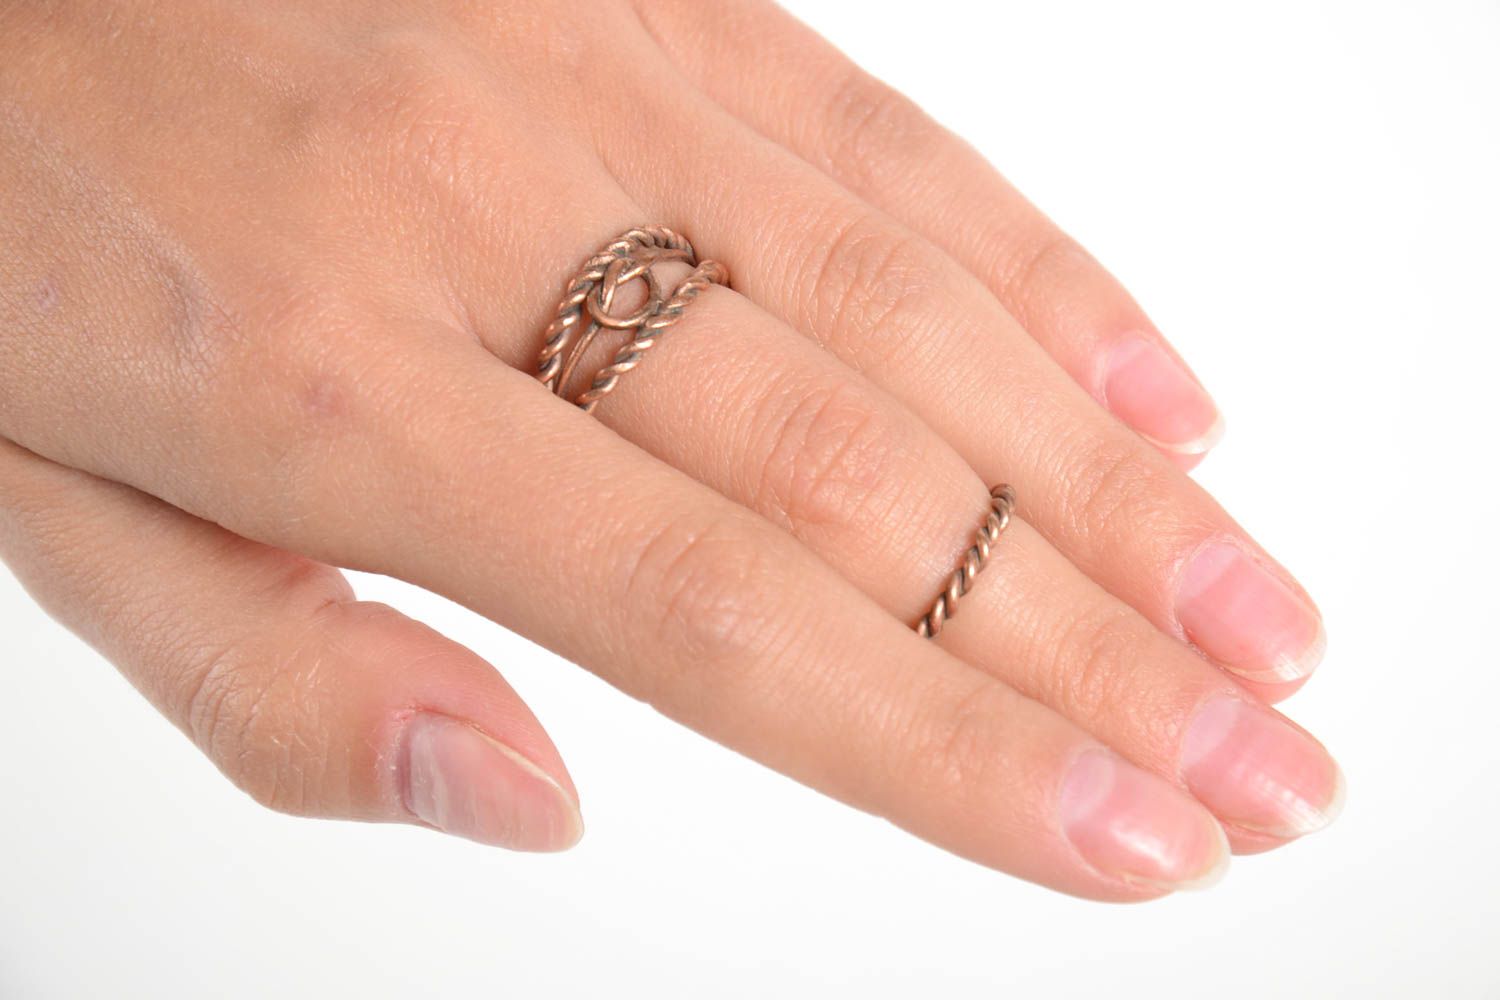 Красивые кольца ручной работы женские кольца из меди необычные кольца 2 штуки фото 2